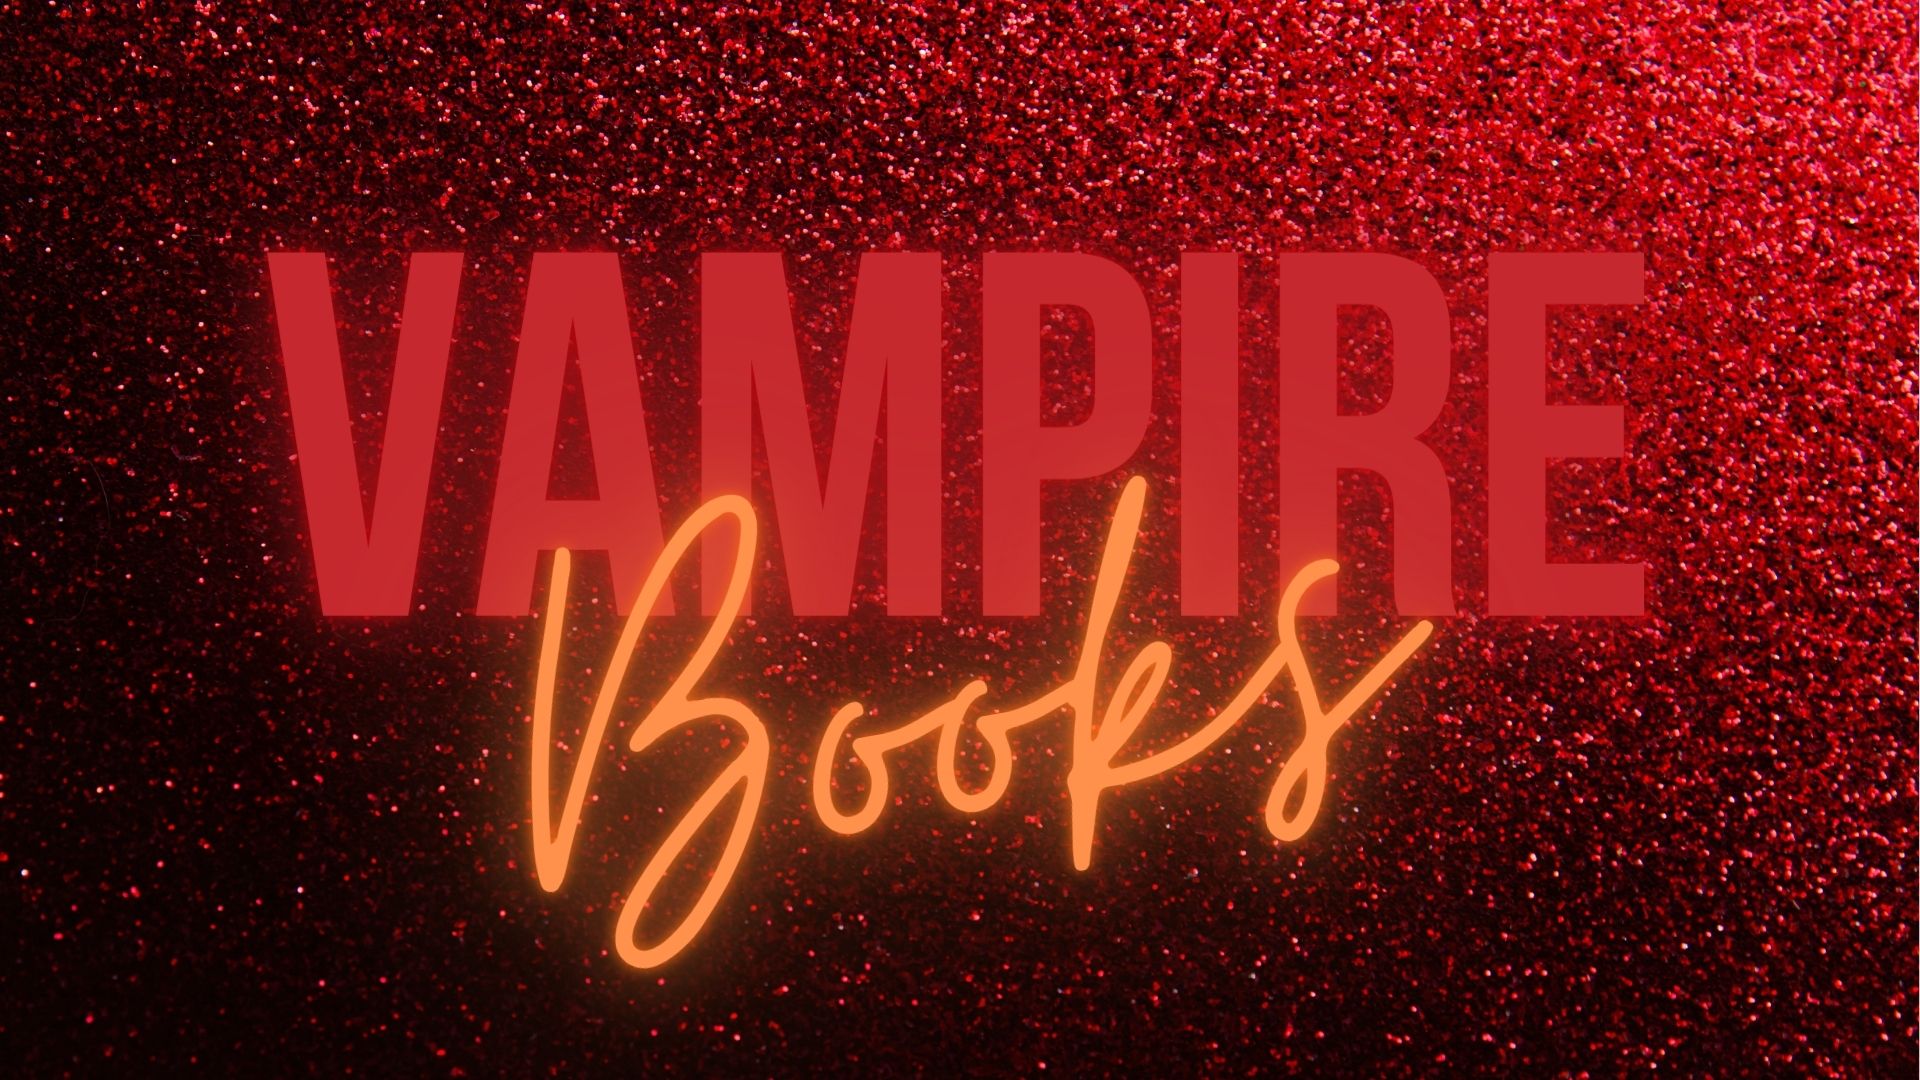 Vampire Books